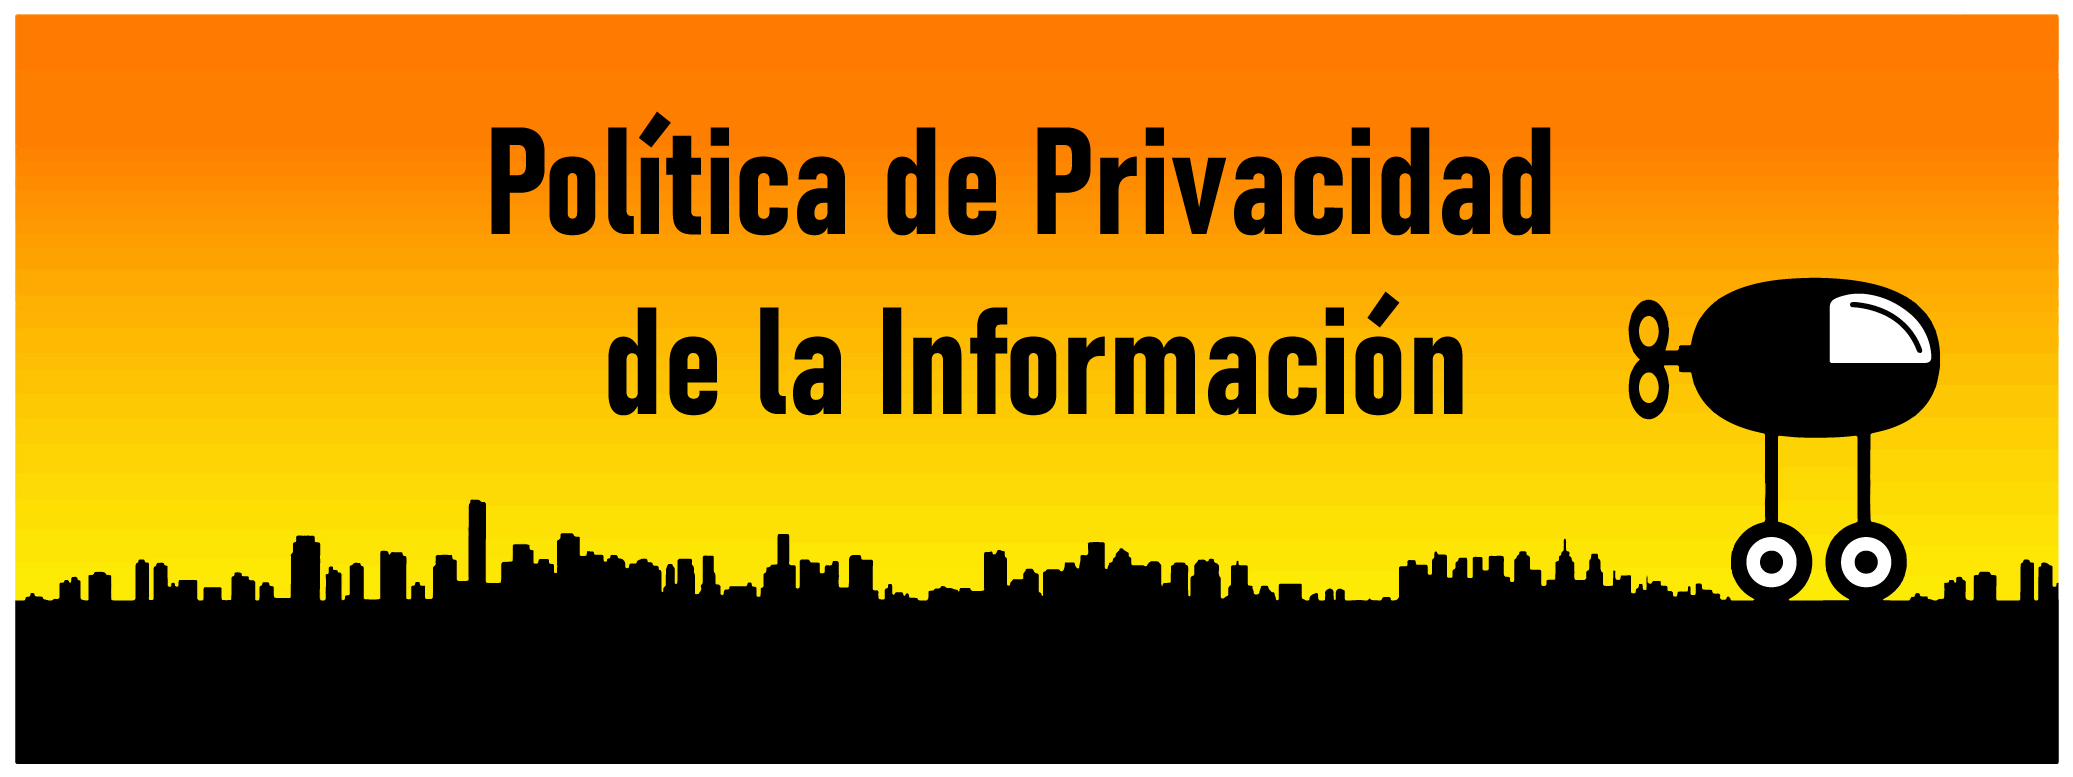 Política de Privacidad de la Información